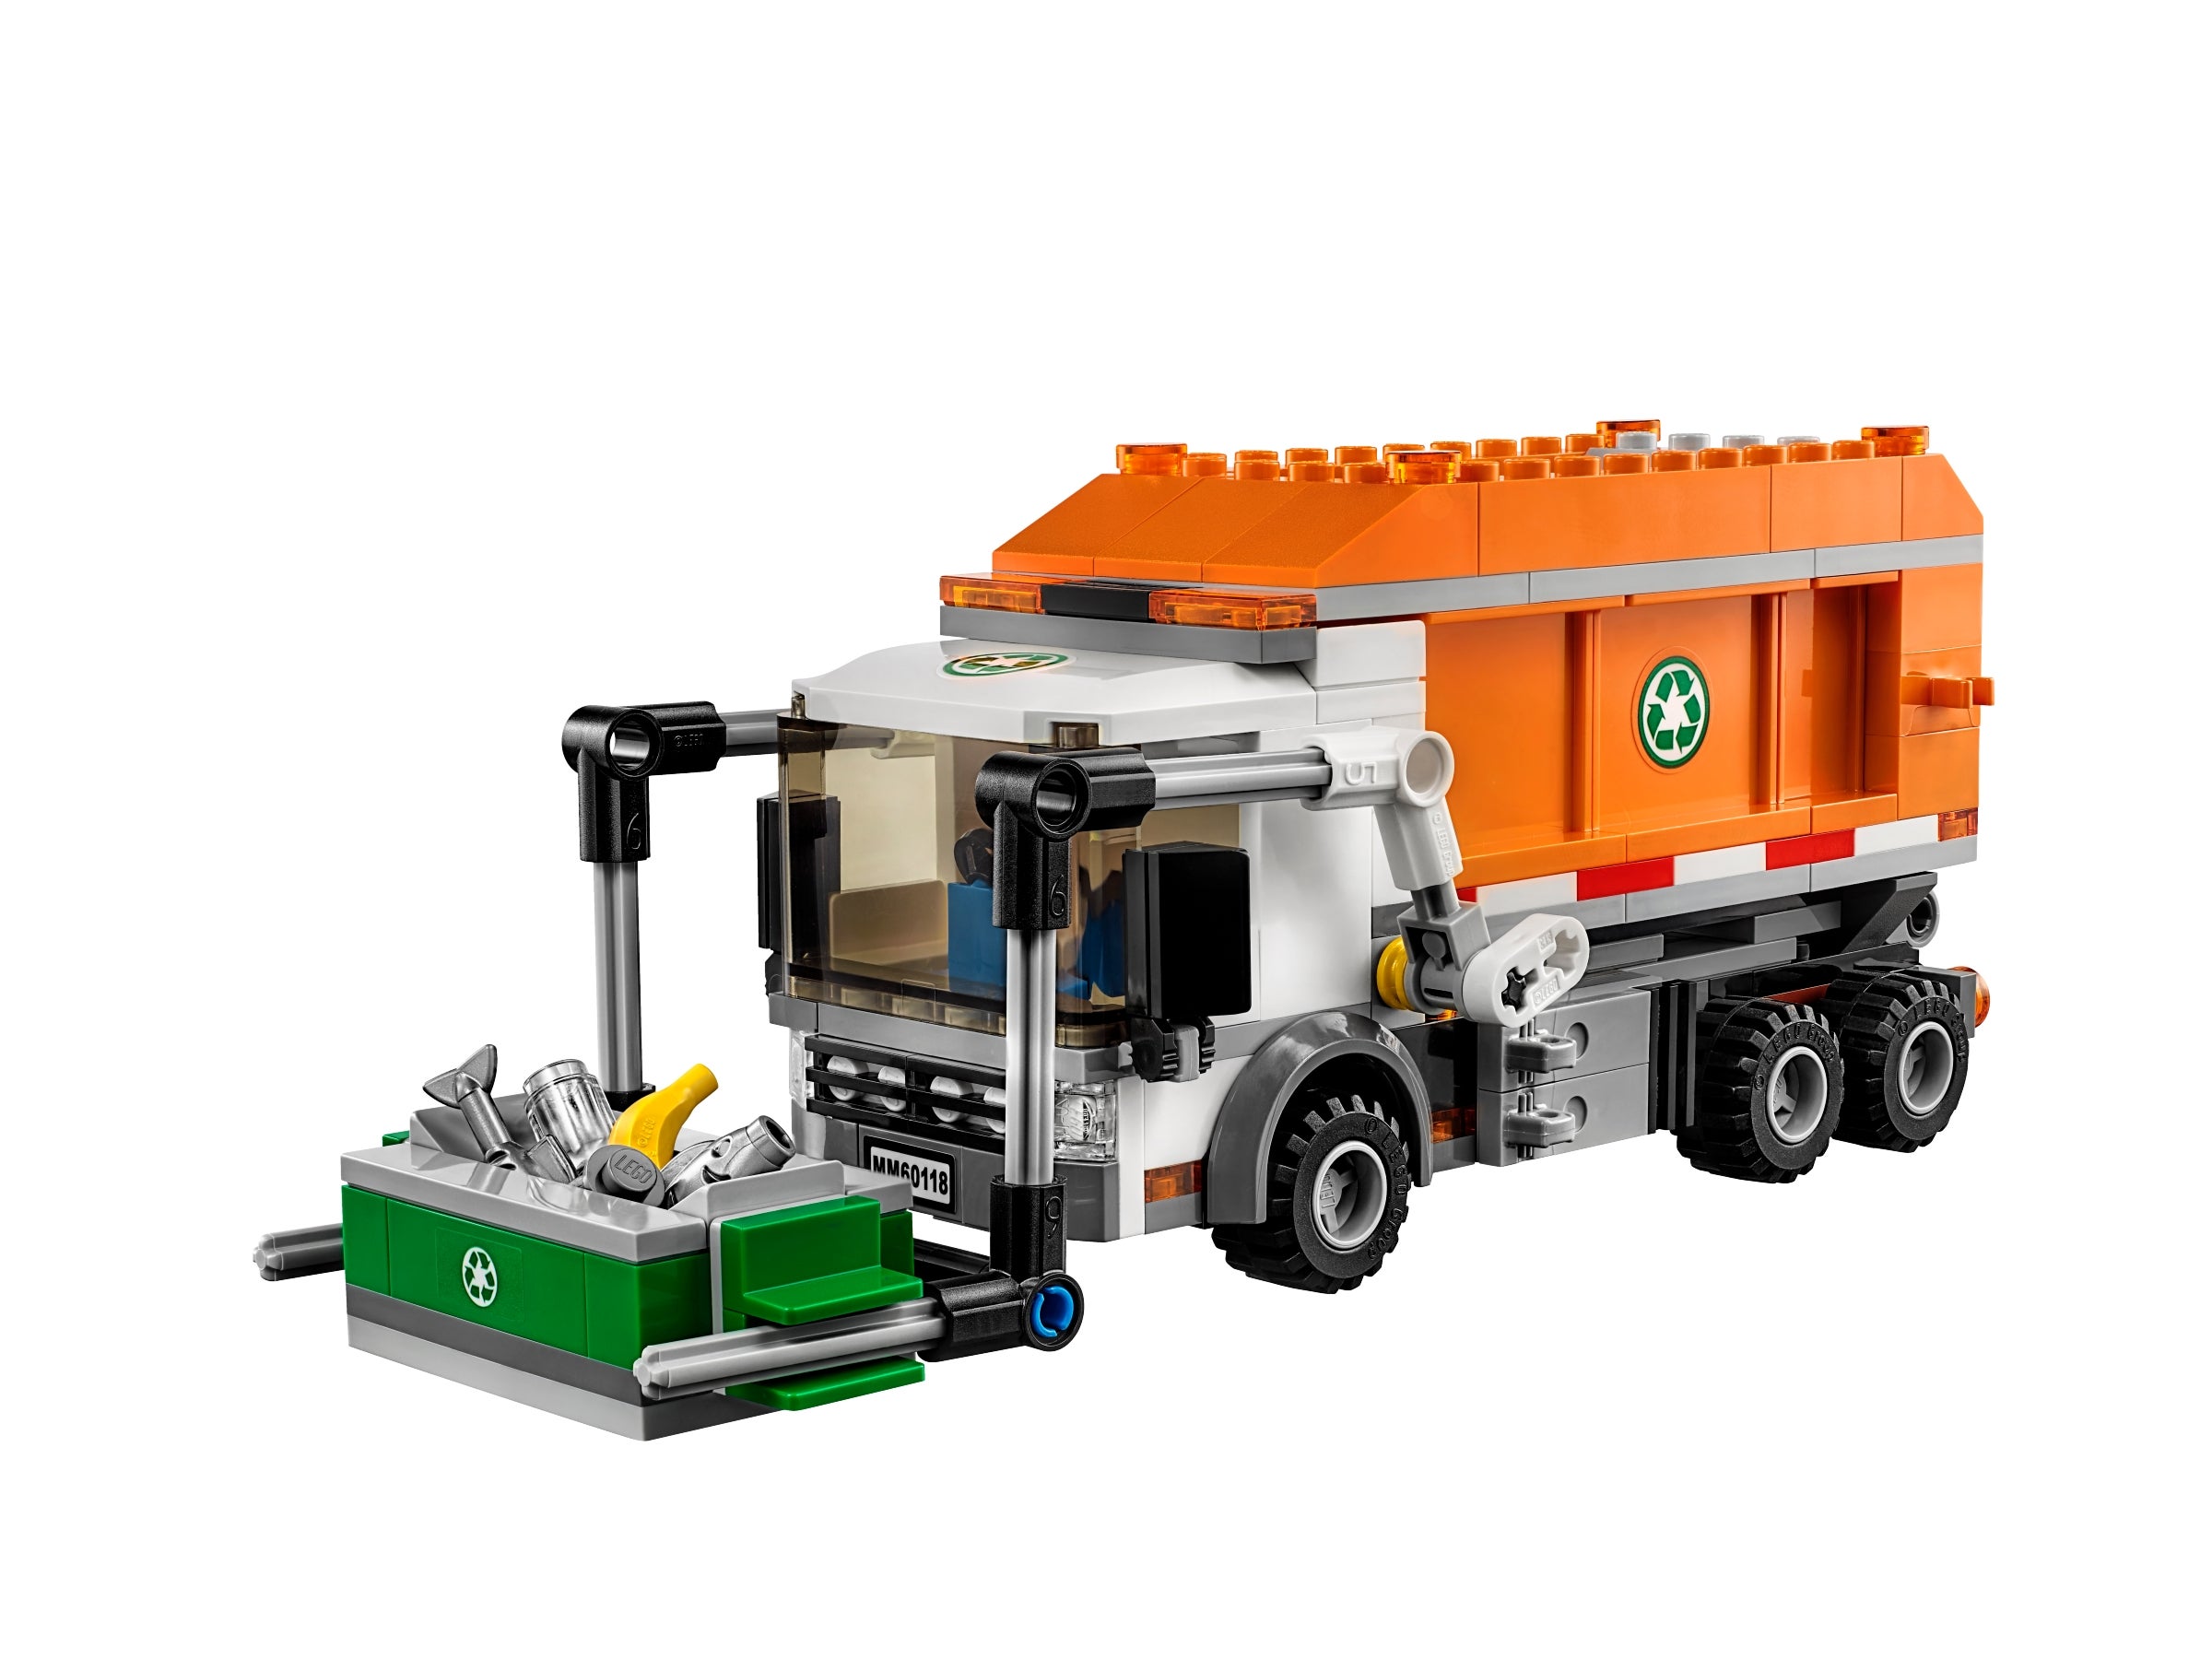 LEGO ® City 60118 camion poubelle NEUF neuf dans sa boîte _ Garbage Truck NEW En parfait état dans sa boîte scellée Boîte d'origine jamais ouverte 